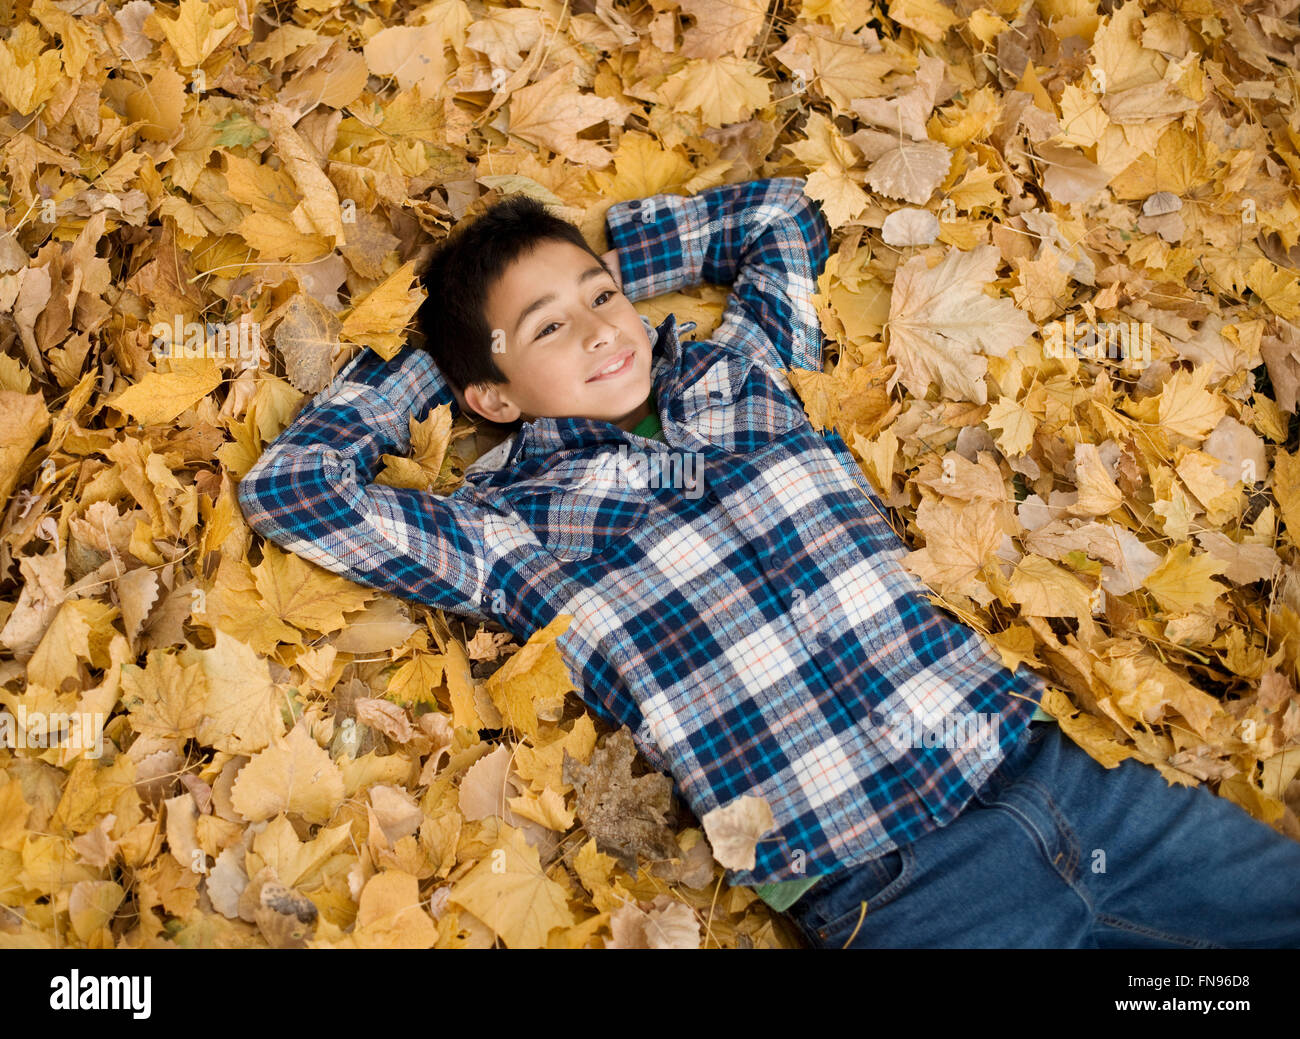 Ein Teenager in ein kariertes Hemd mit seinen Armen hinter dem Kopf auf einem Haufen Herbstlaub liegend. Stockfoto